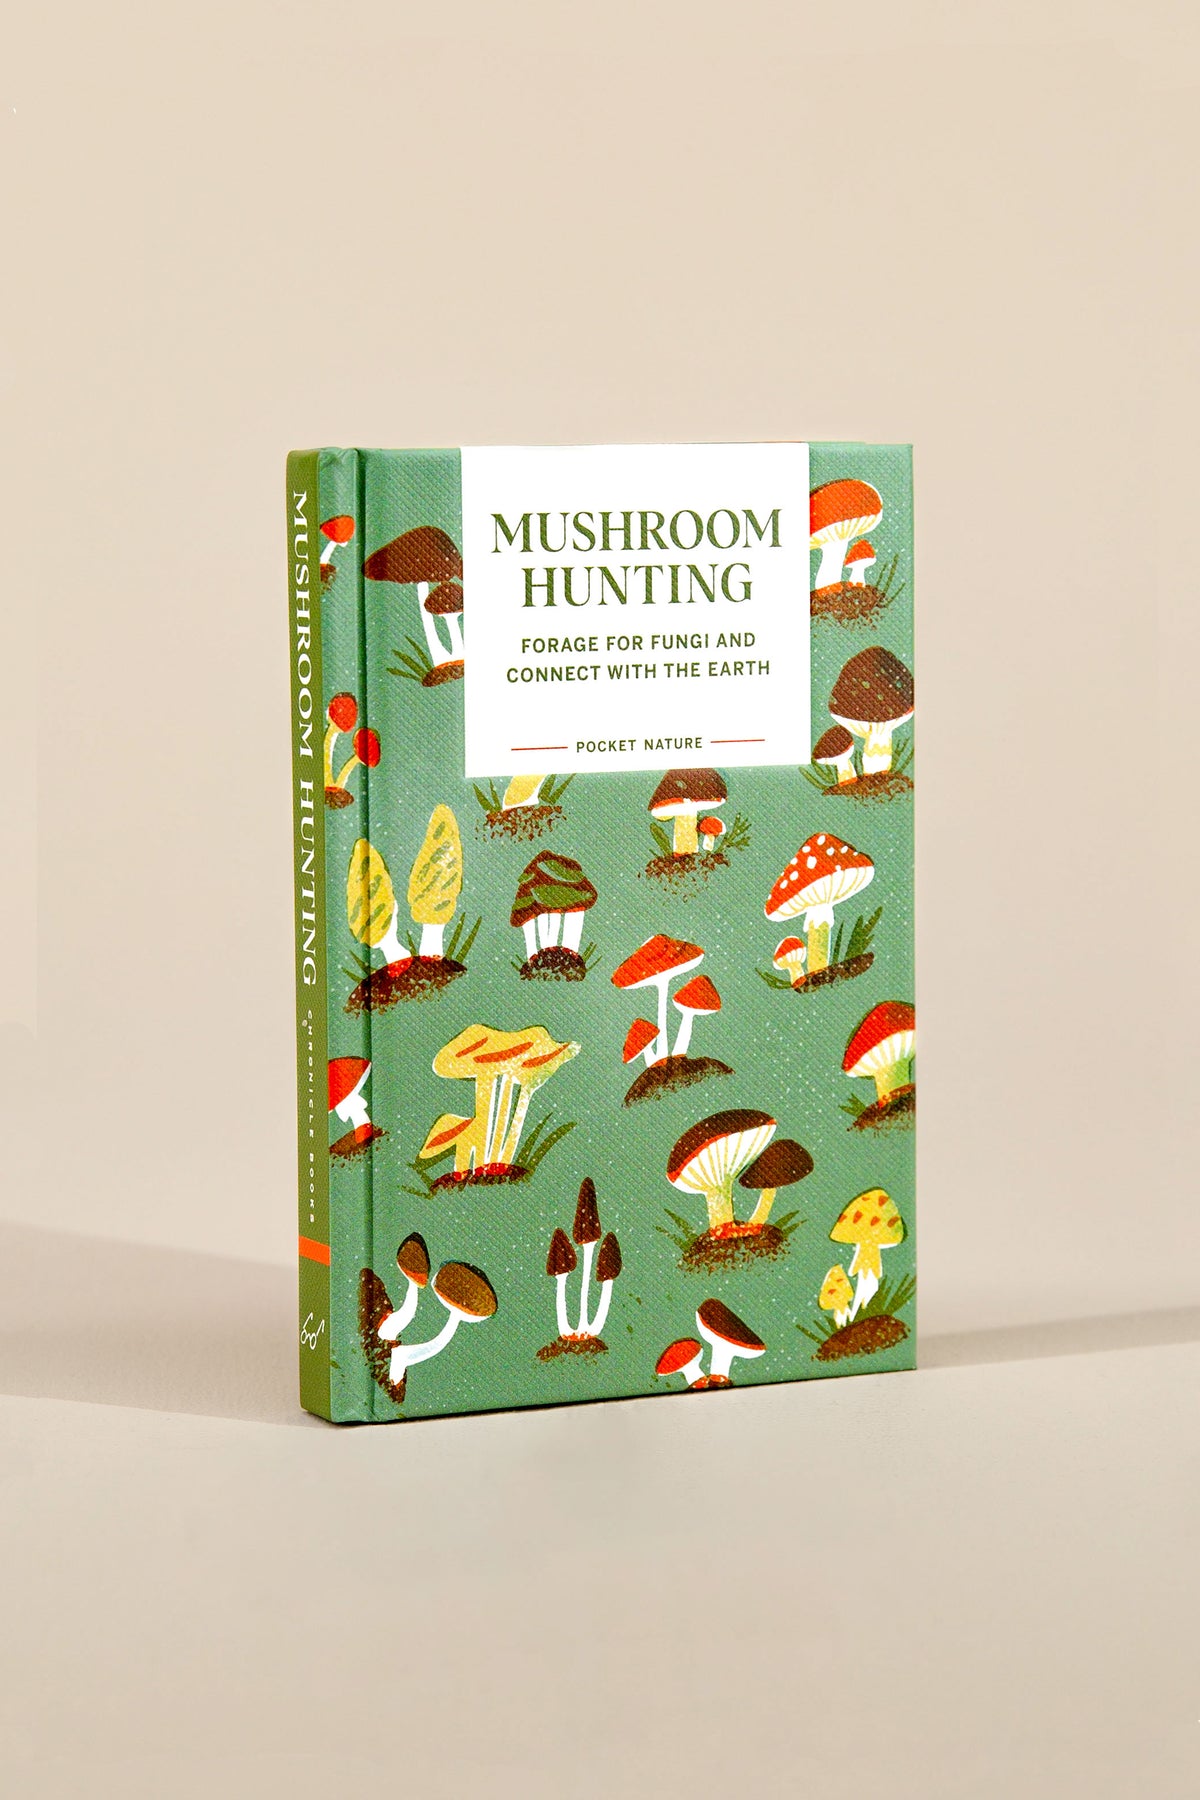 pocket nature: mushroom hunting